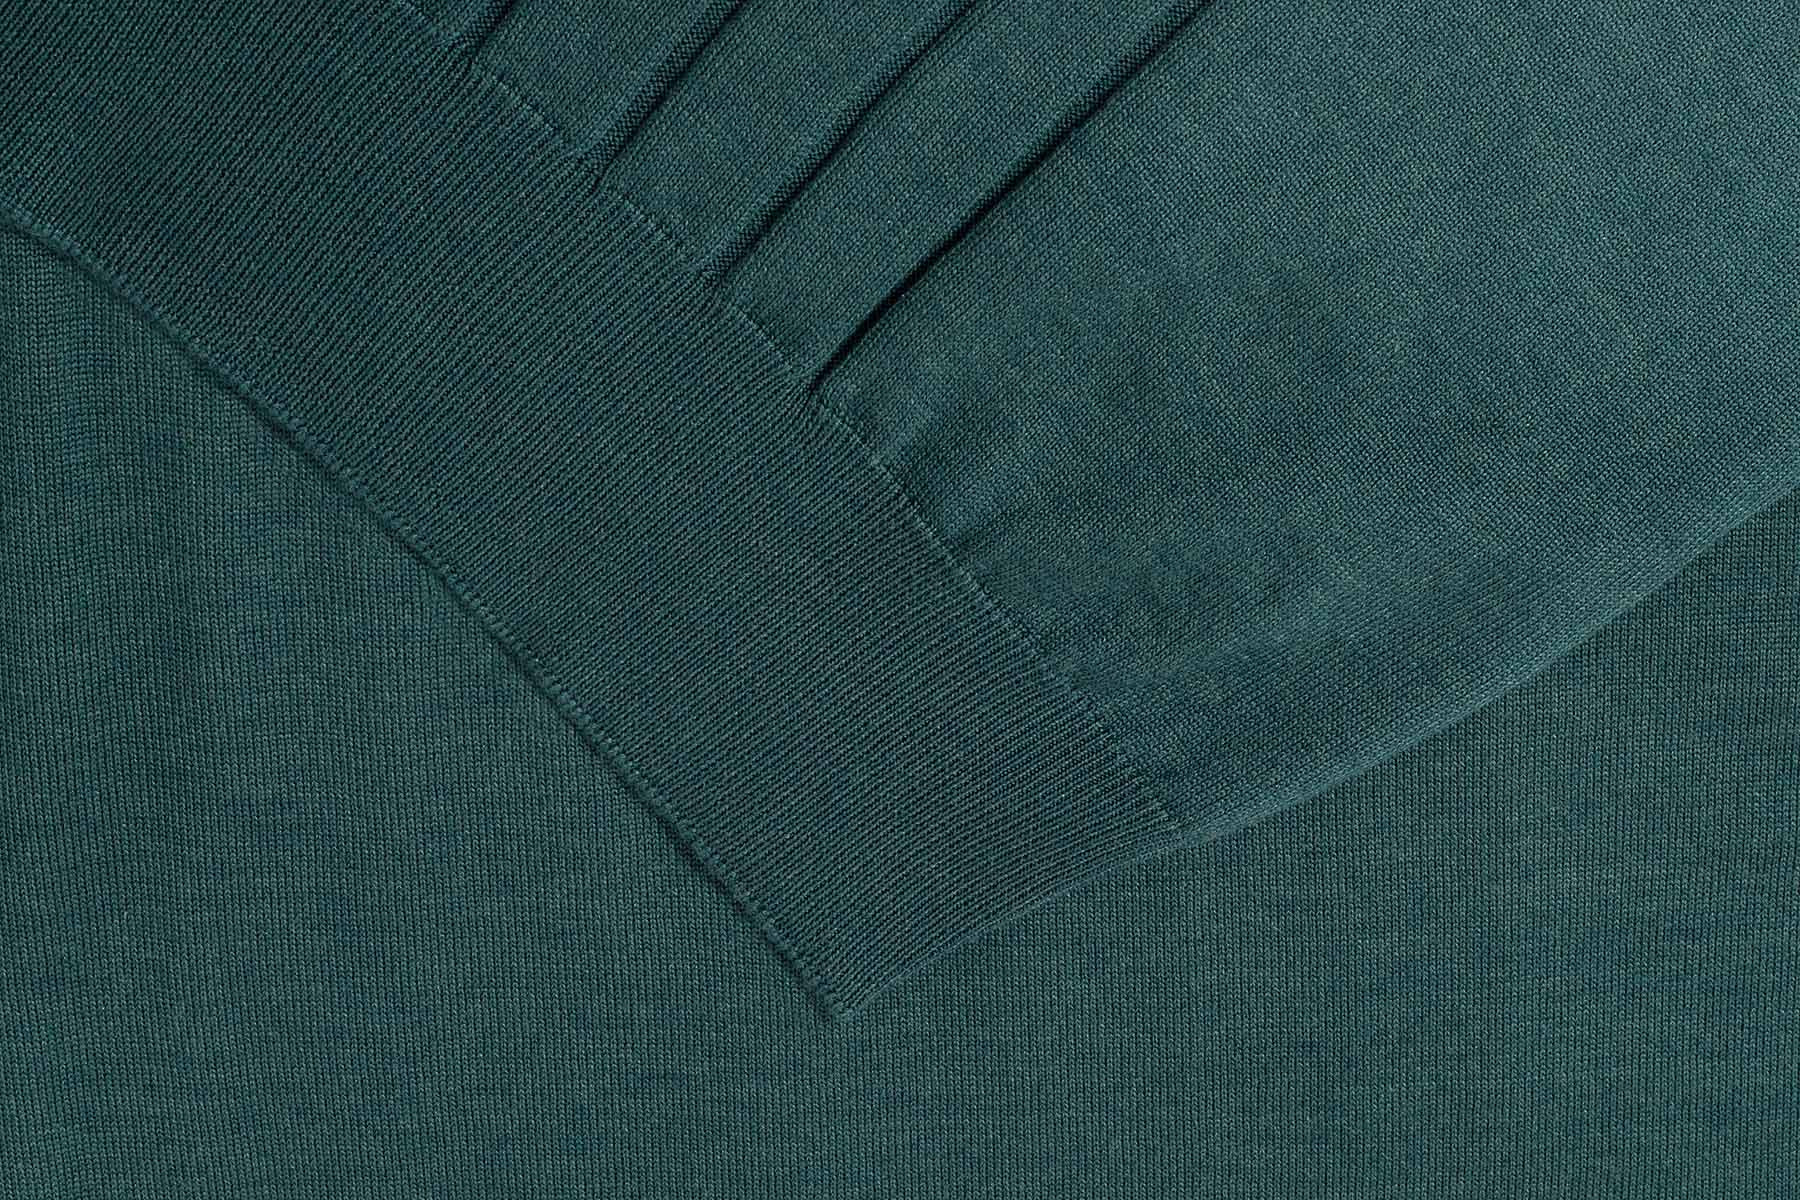 Pine green zipped polo shirt, 